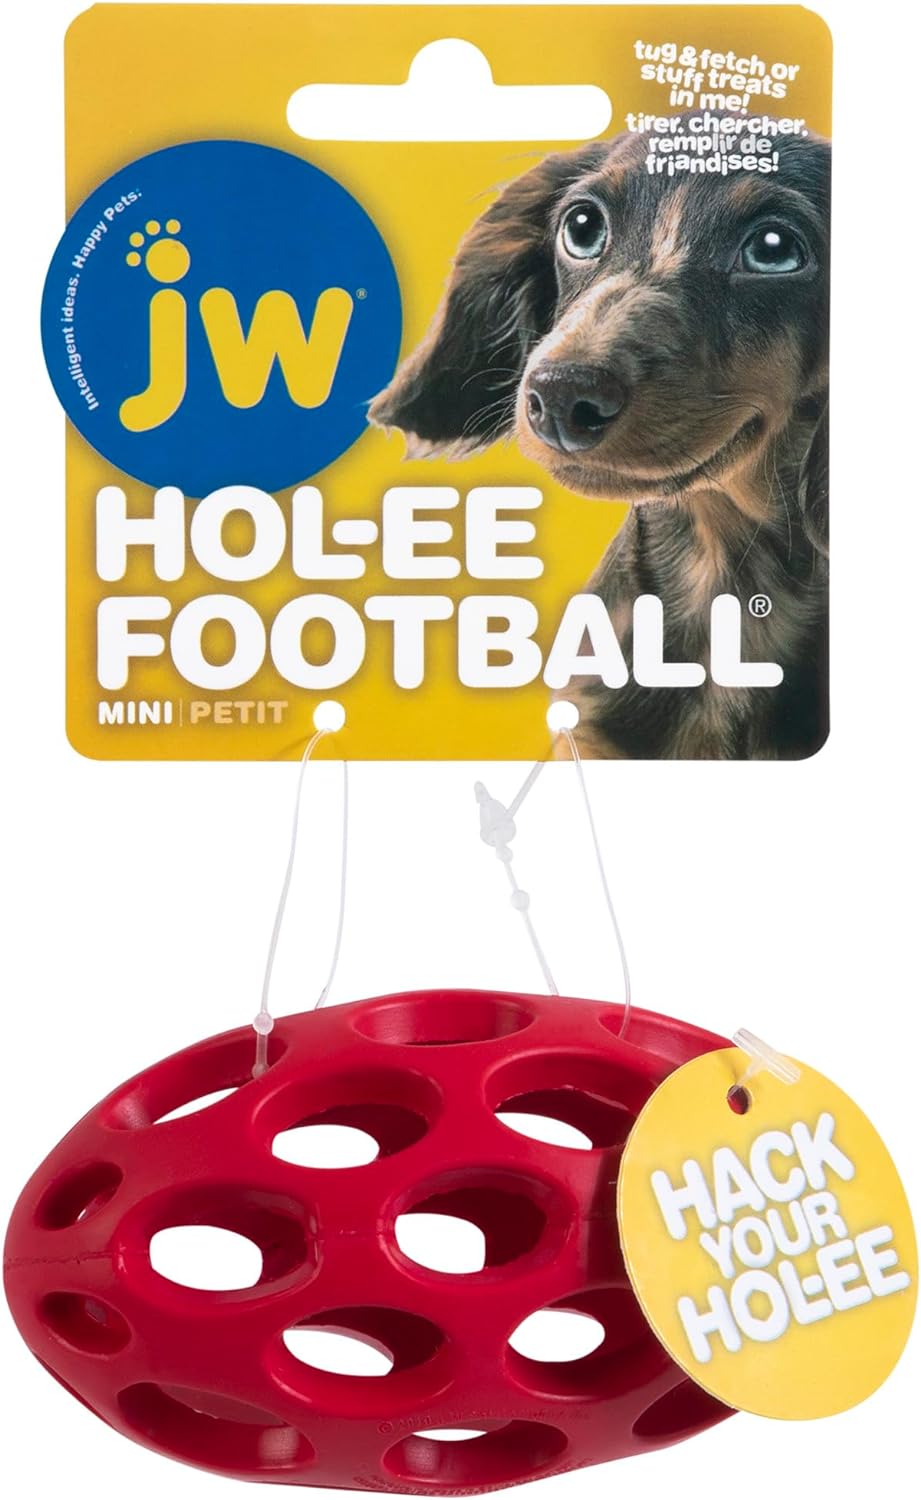 Jw Hol-Ee Football Mini